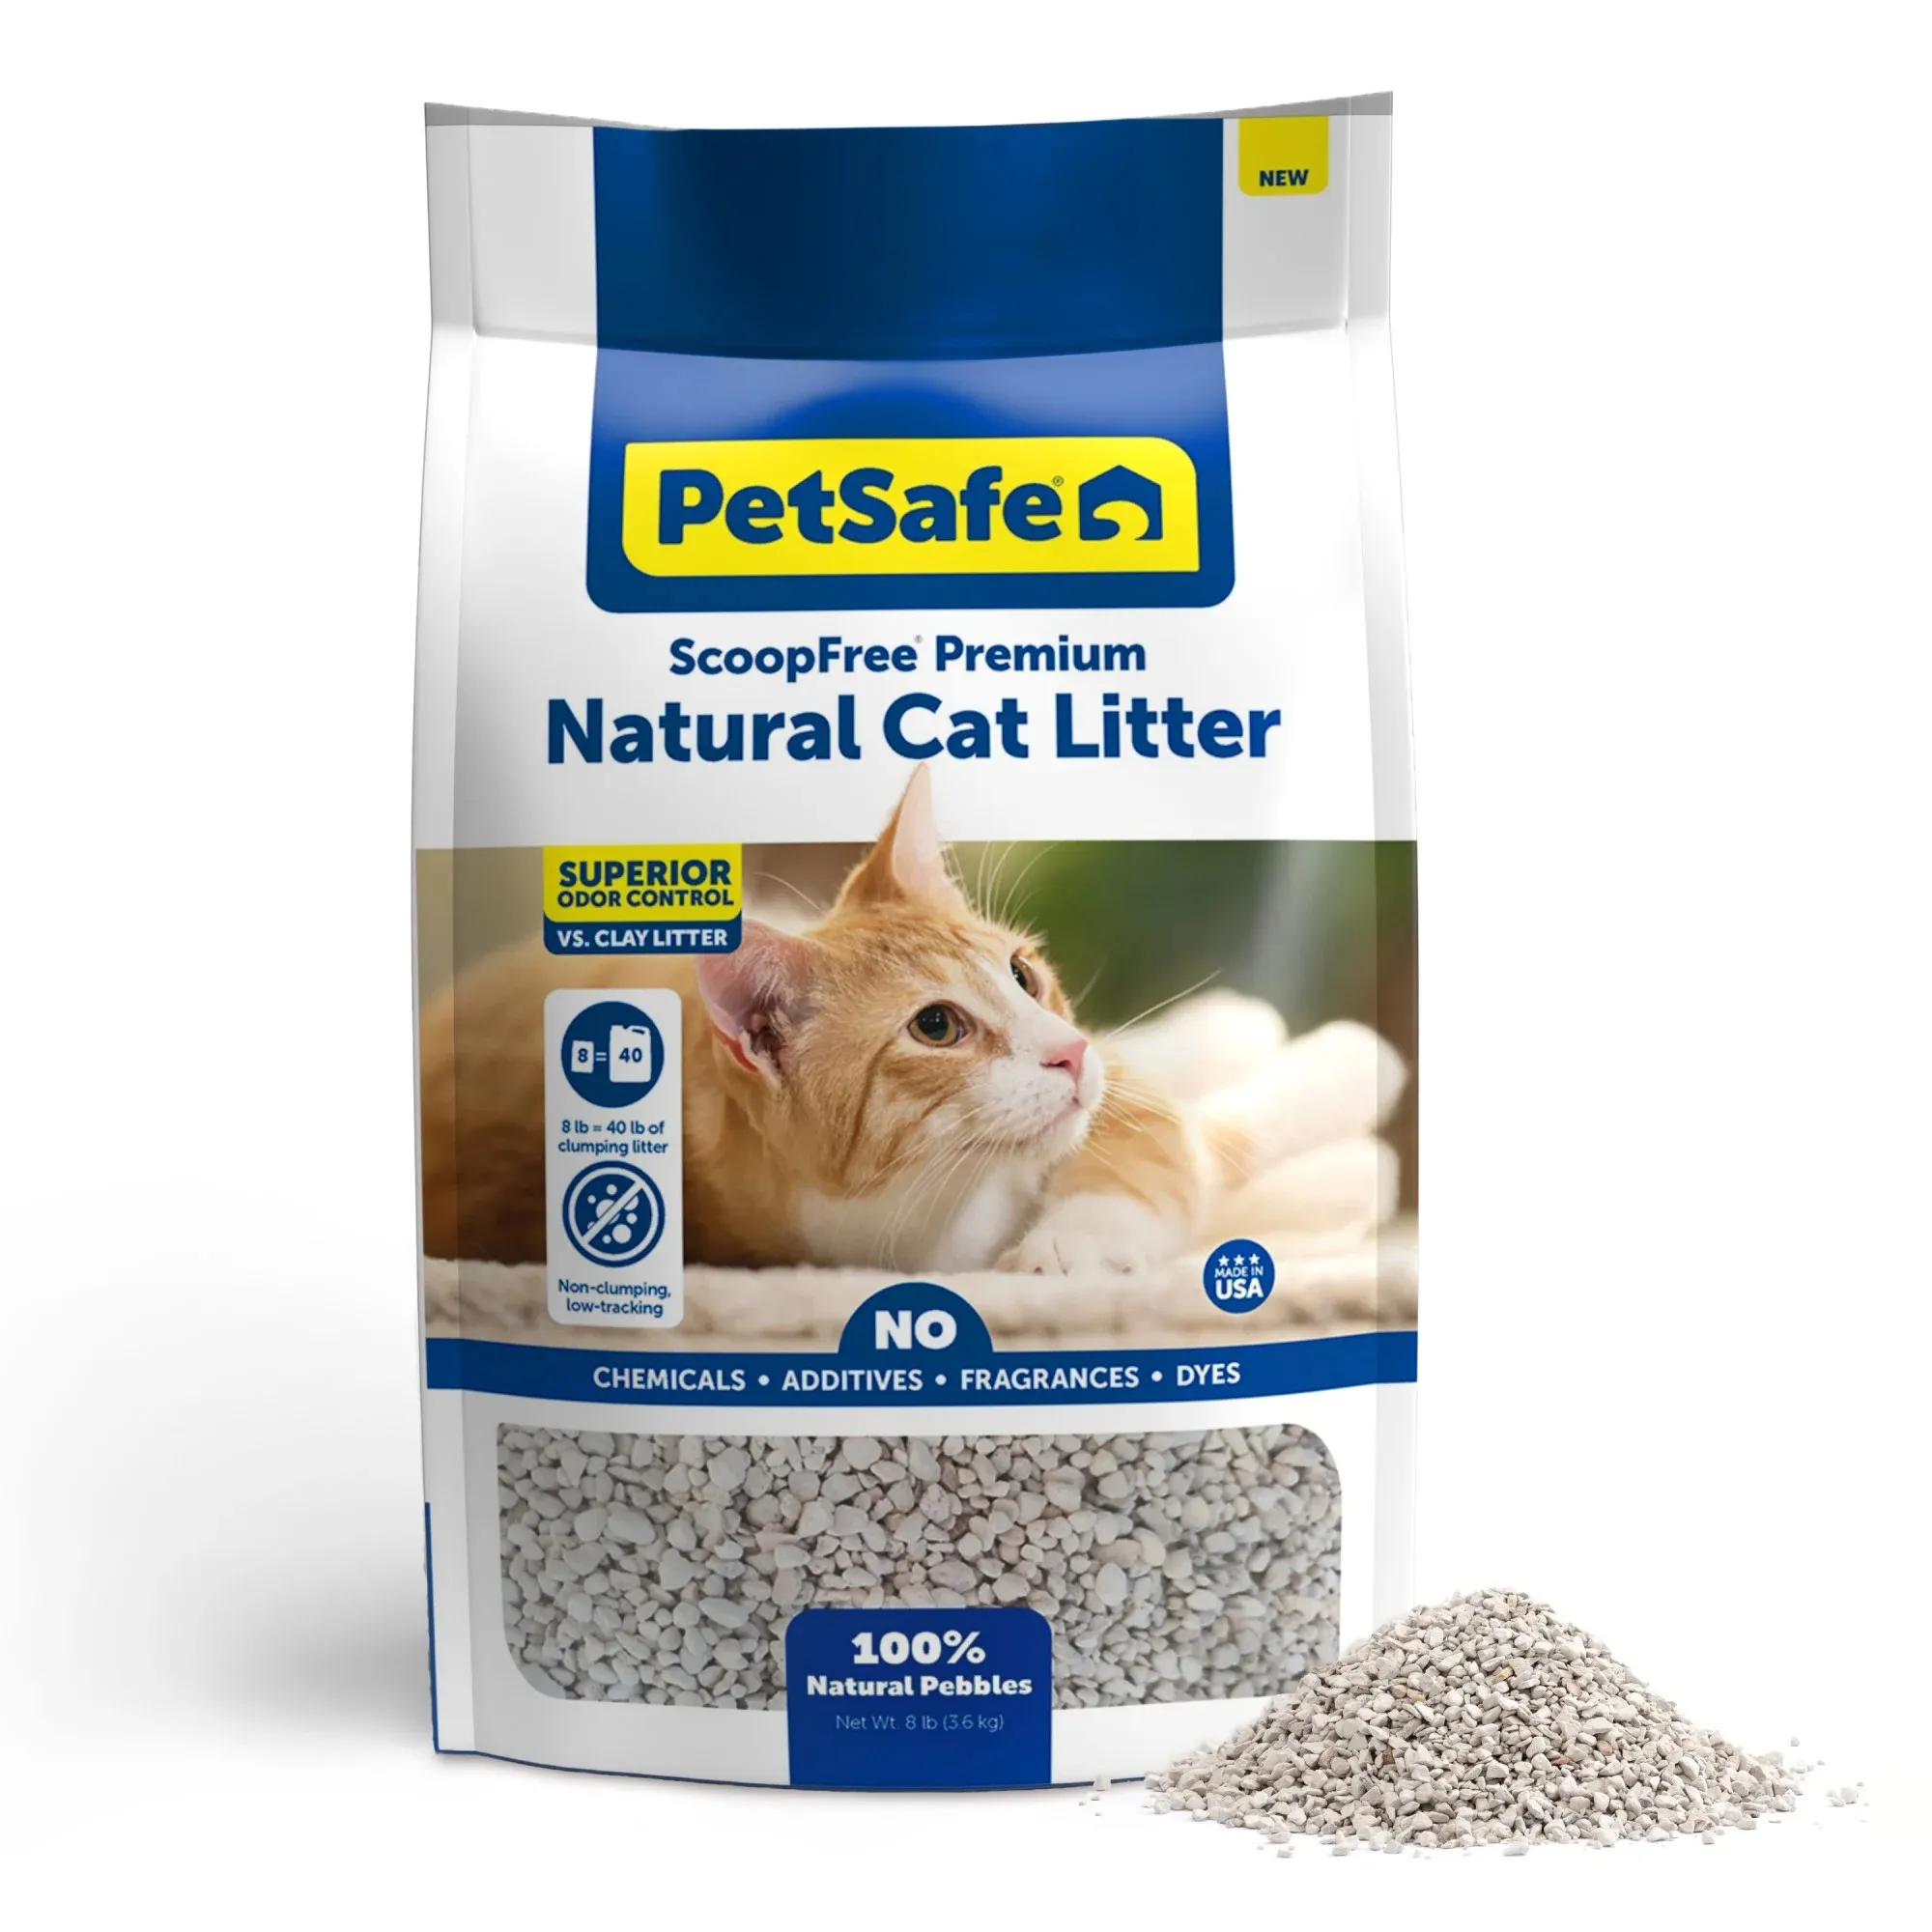 PetSafe ScoopFree Sac à litière naturelle de qualité supérieure pour chat, contrôle supérieur des odeurs pendant 21 jours et plus, 8 lb